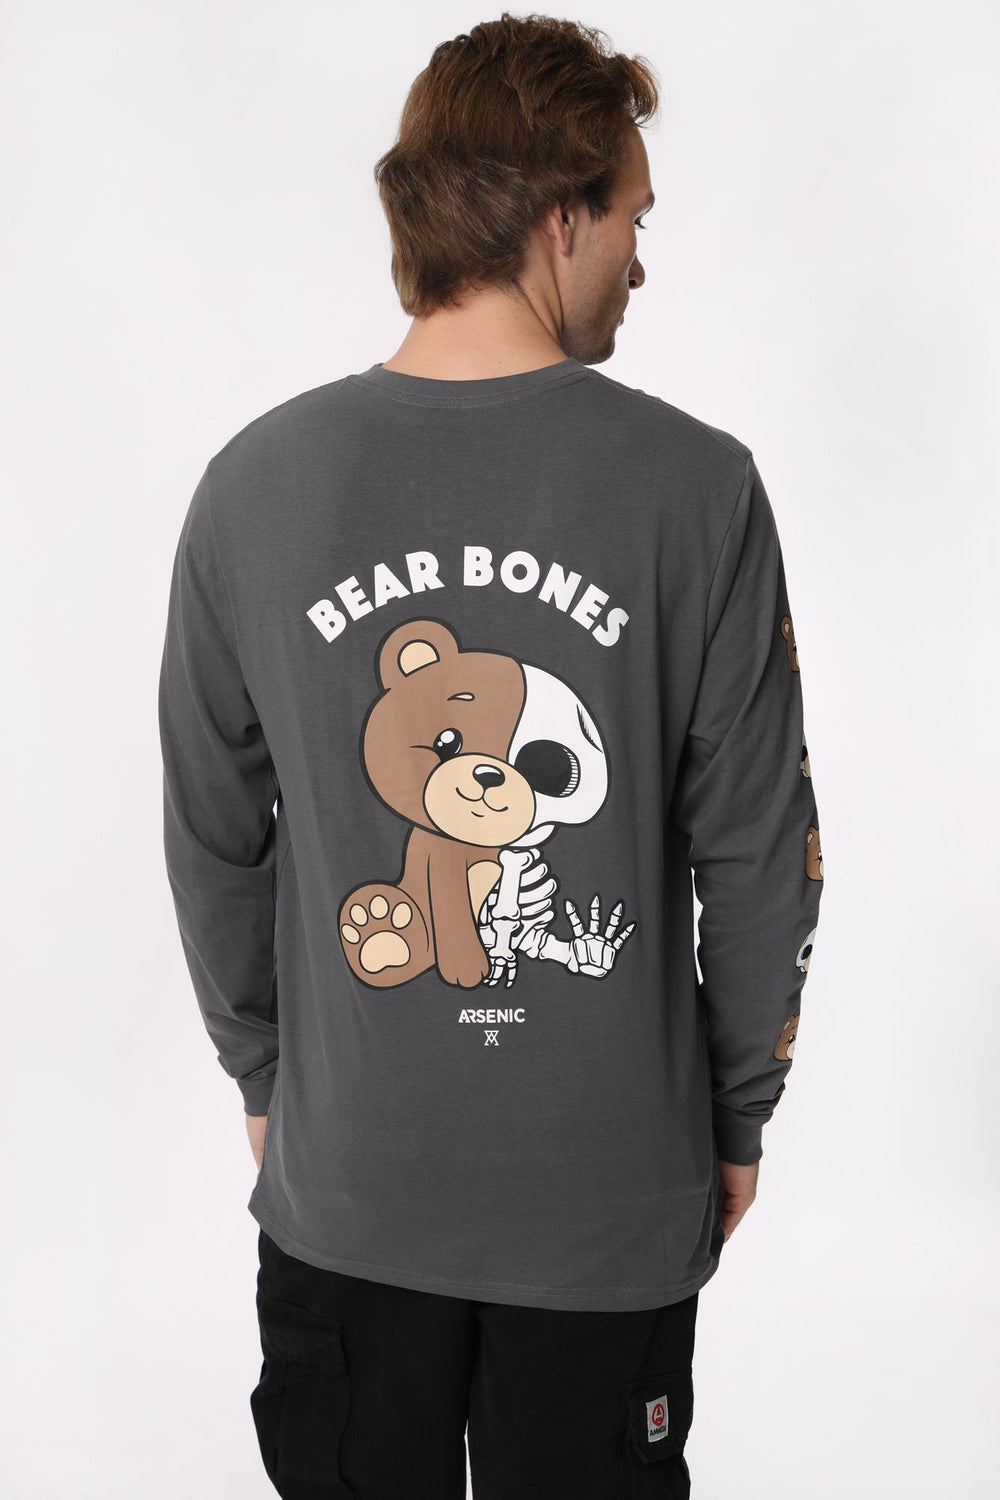 Haut à Manches Longues Bear Bones Arsenic Homme Haut à Manches Longues Bear Bones Arsenic Homme